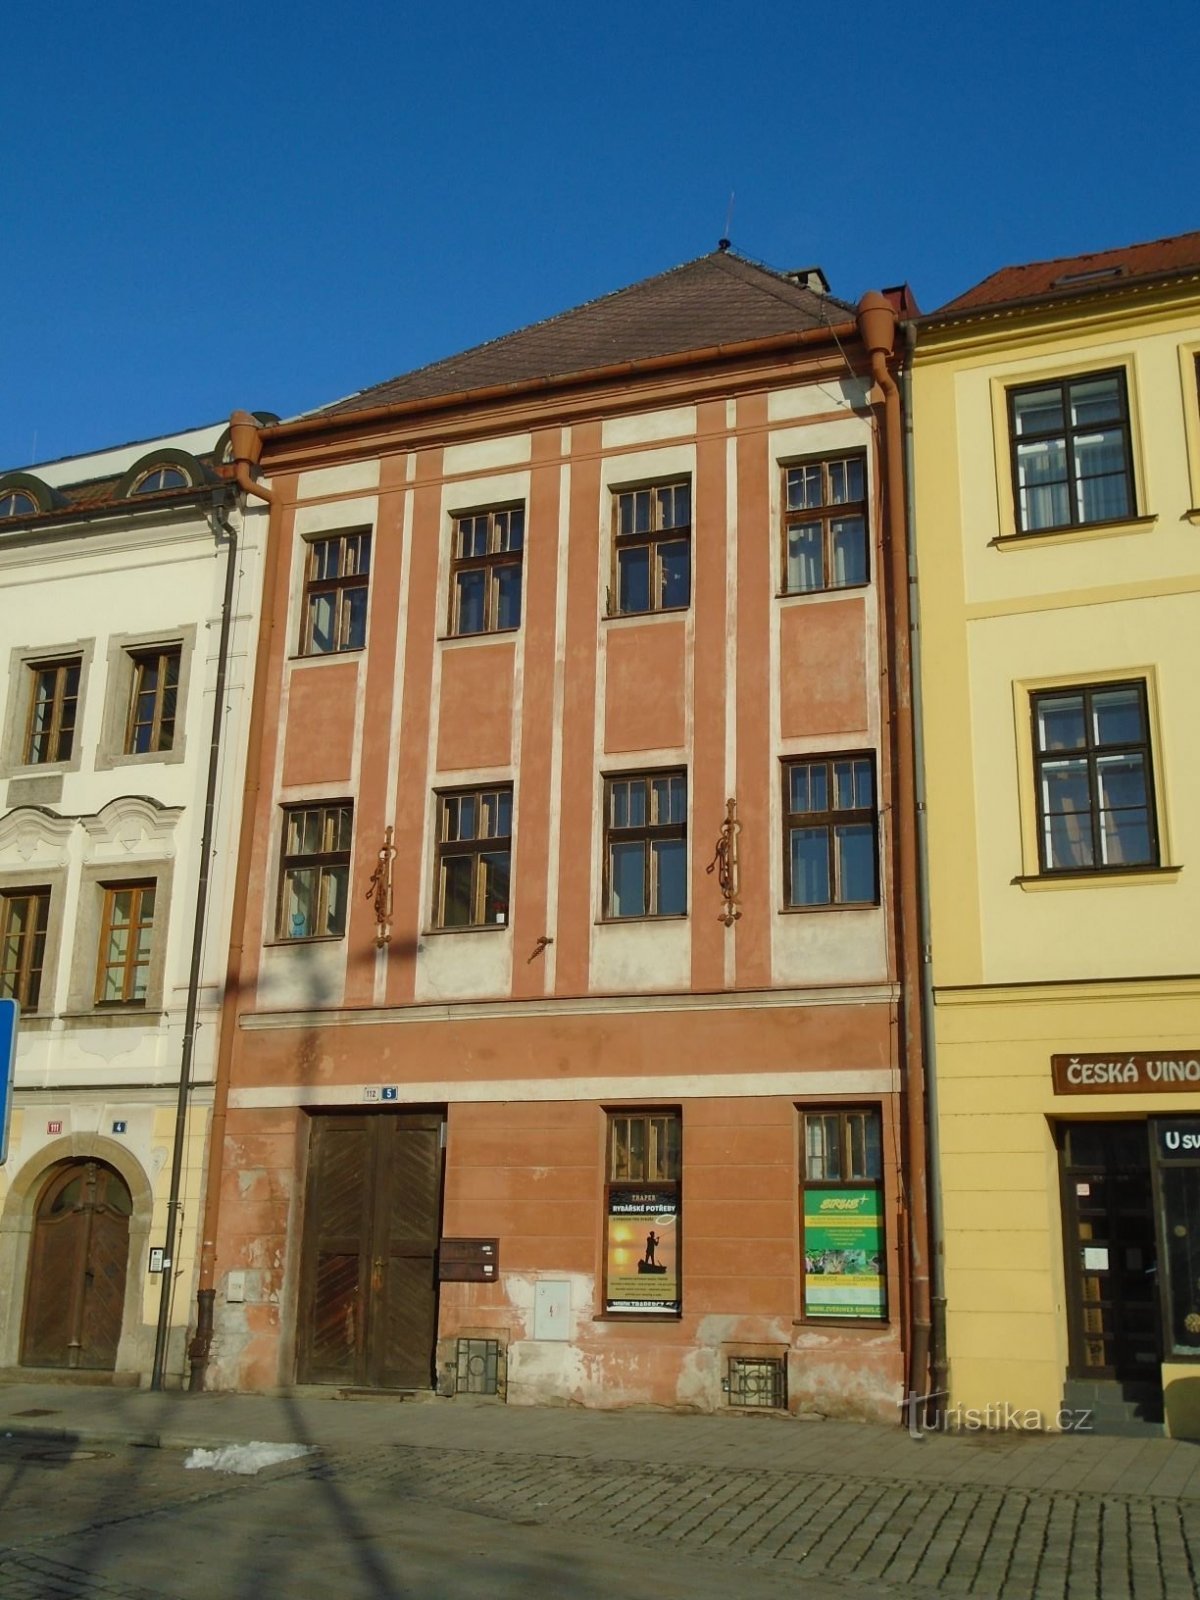 Malé náměstí čp. 112 (Hradec Králové, 30.1.2019)